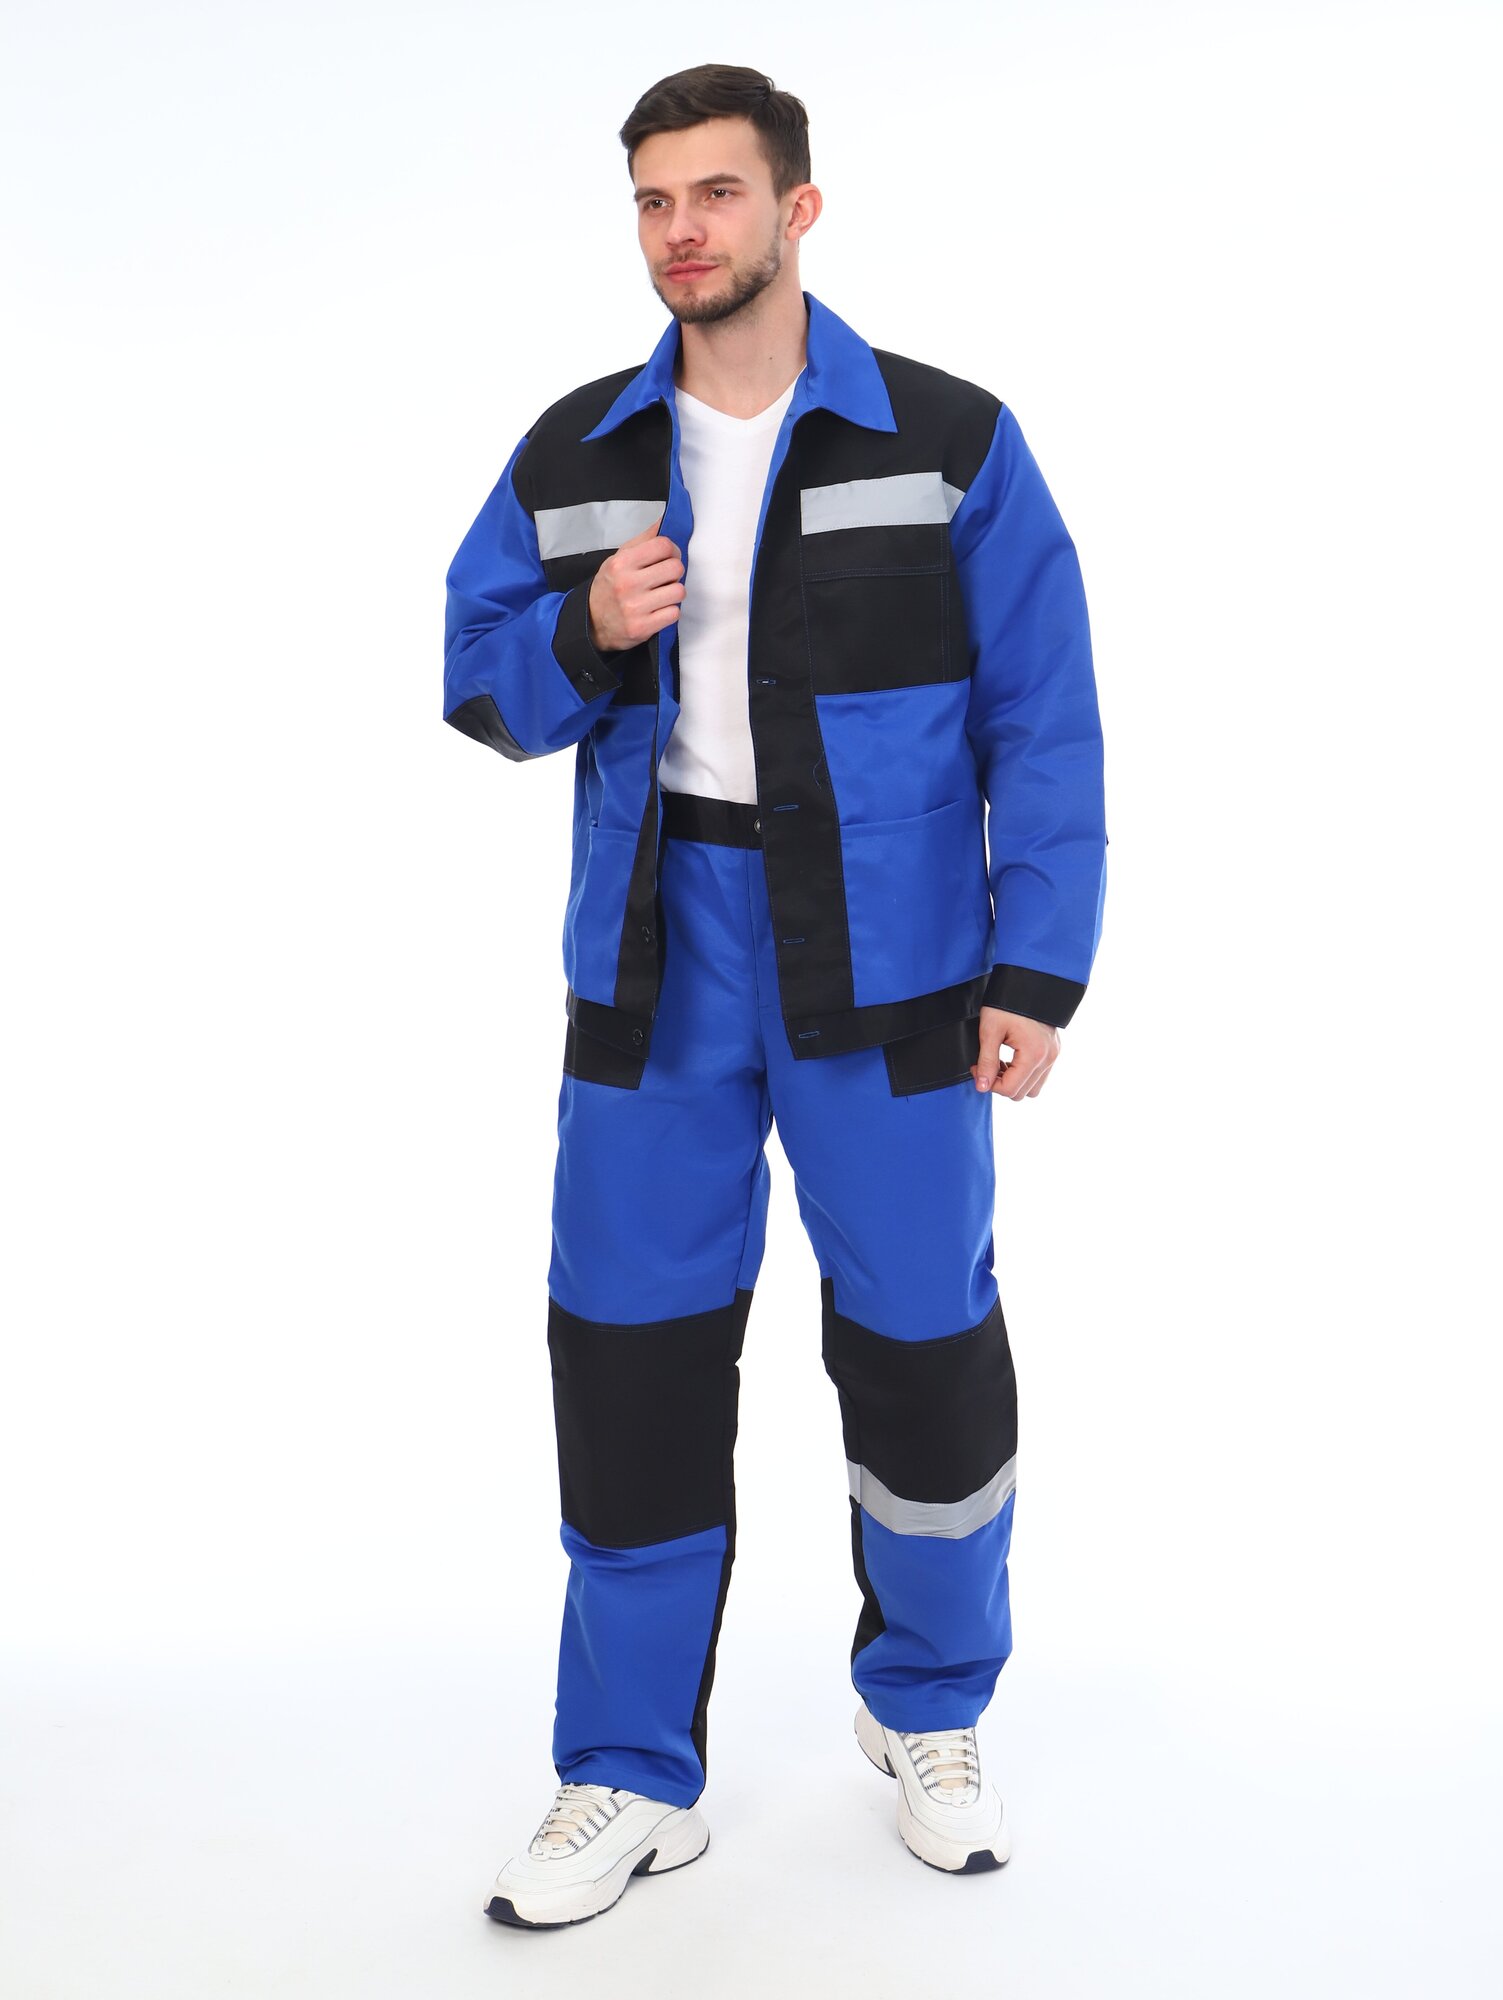 Костюм мужской рабочий (куртка + брюки), спецовка для ремонта, строительства, дачи, цвет синий/черный, размер 52-54 (182-188)